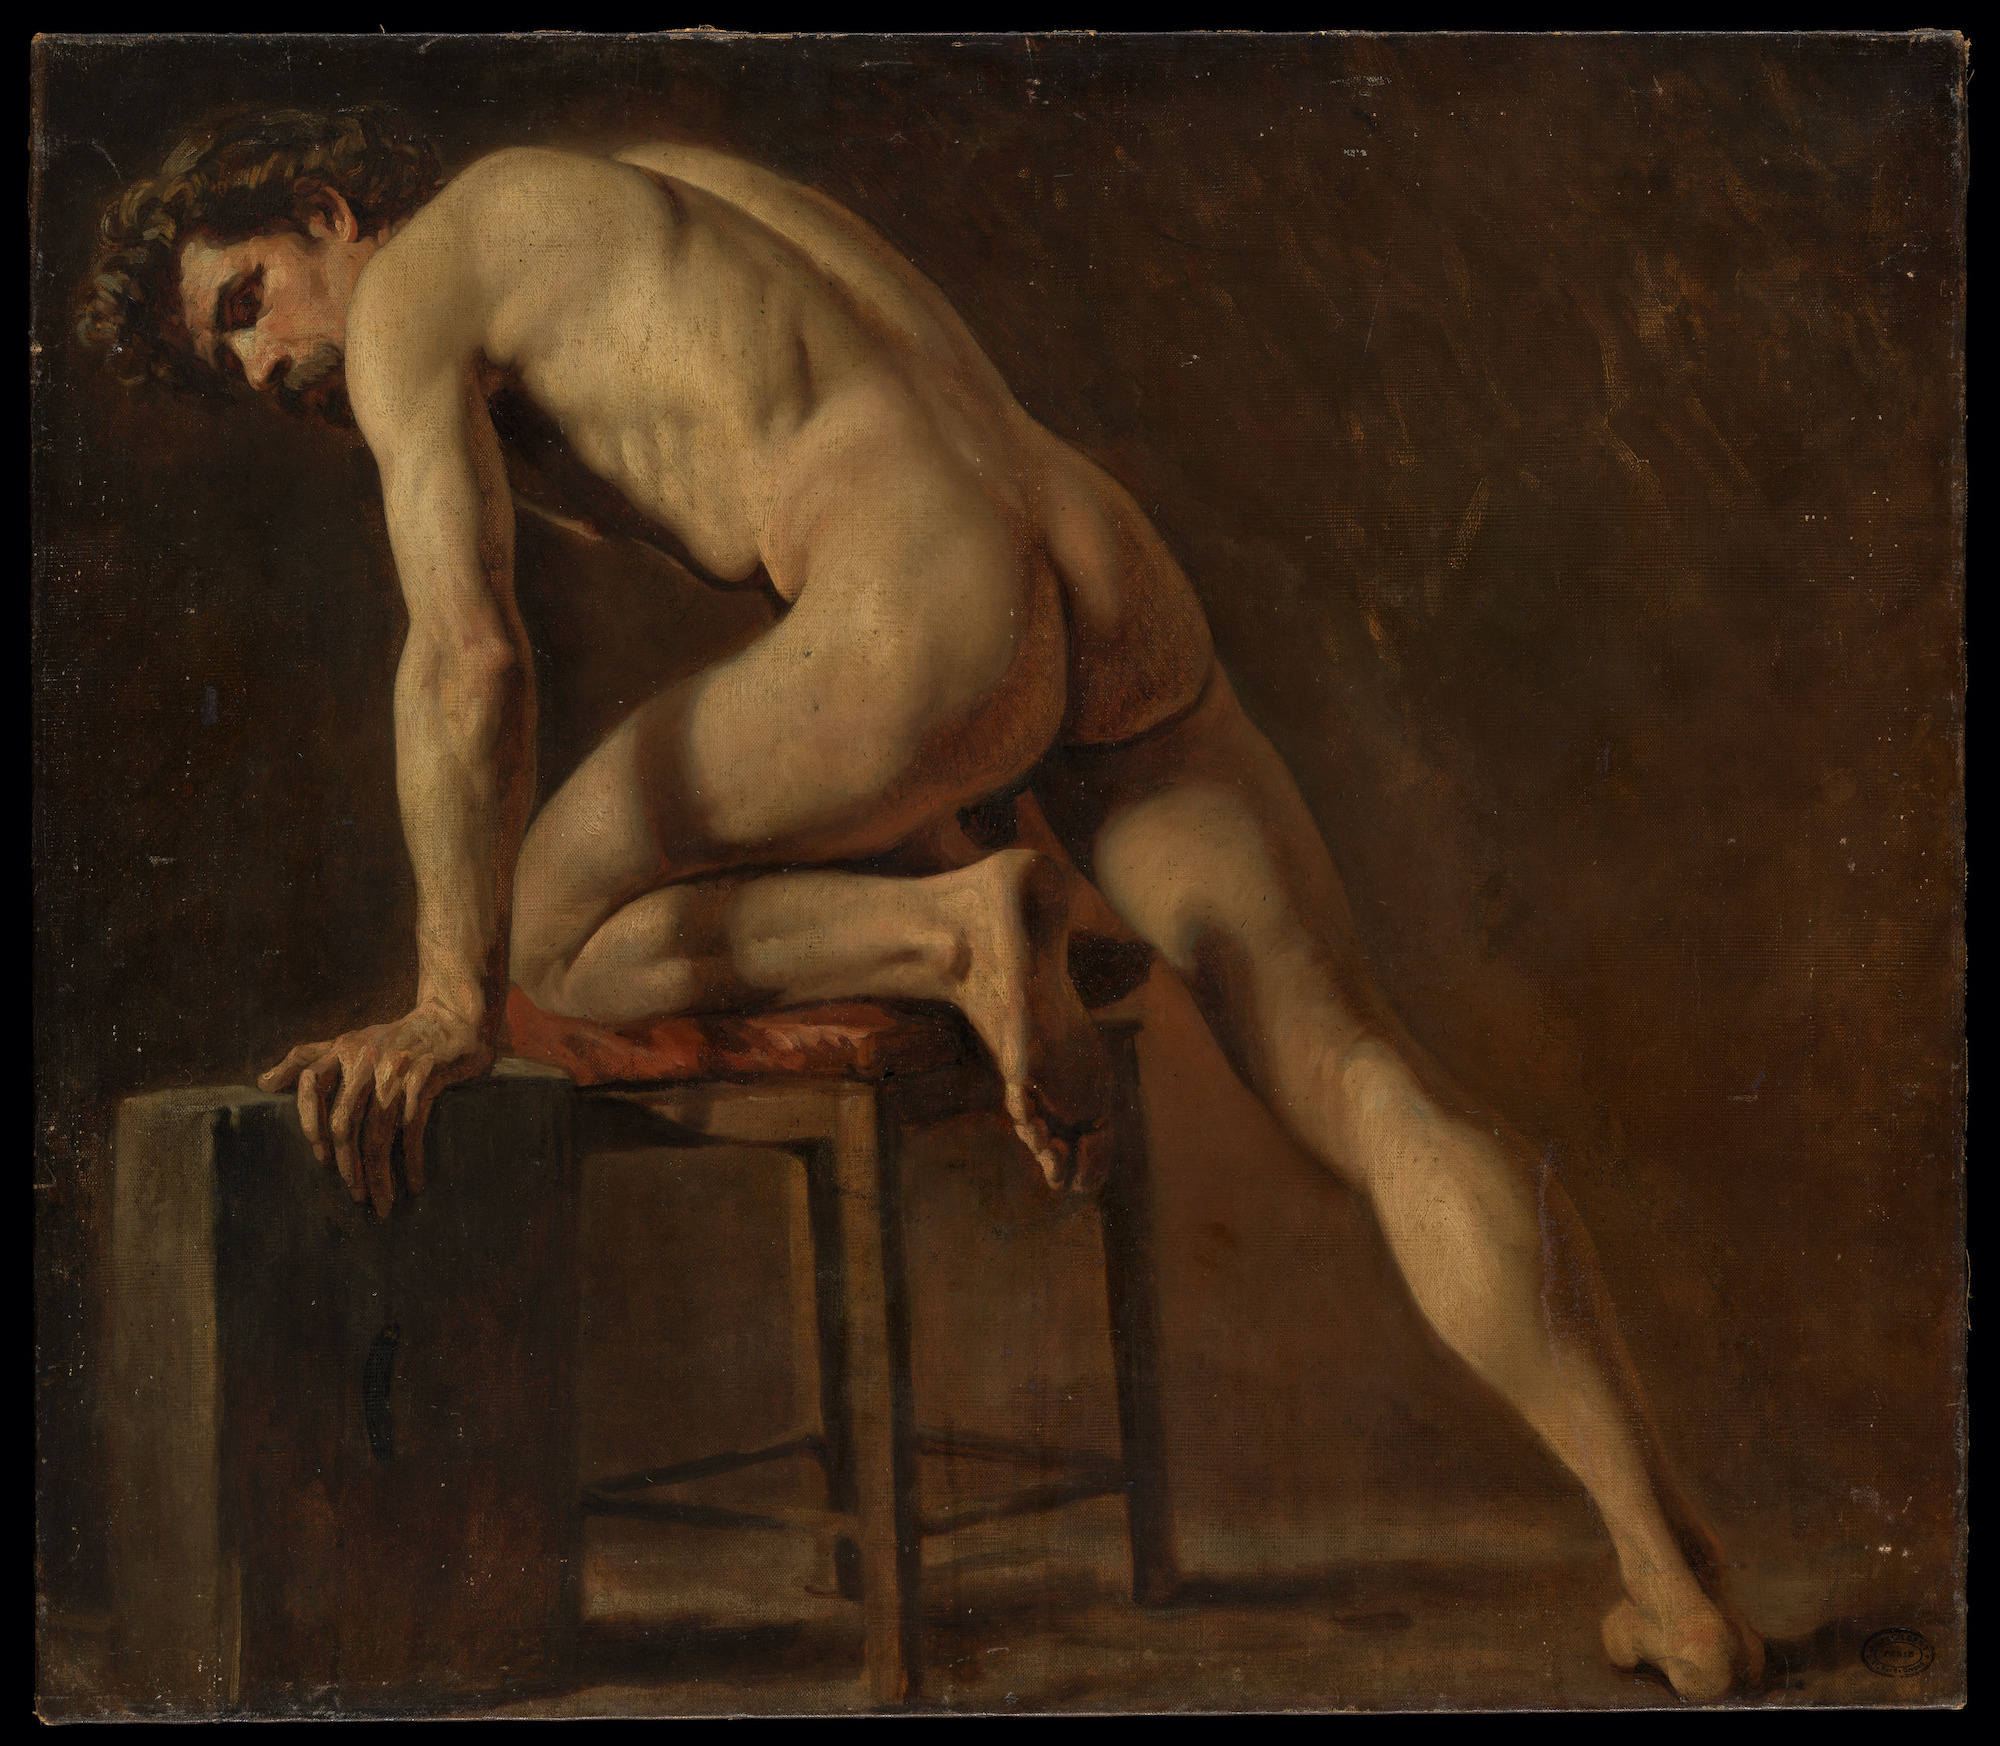 Studium nagiego mężczyzny by Gustave Courbet - początek lat 40. XIX w. - 73,7 × 84,1 cm 